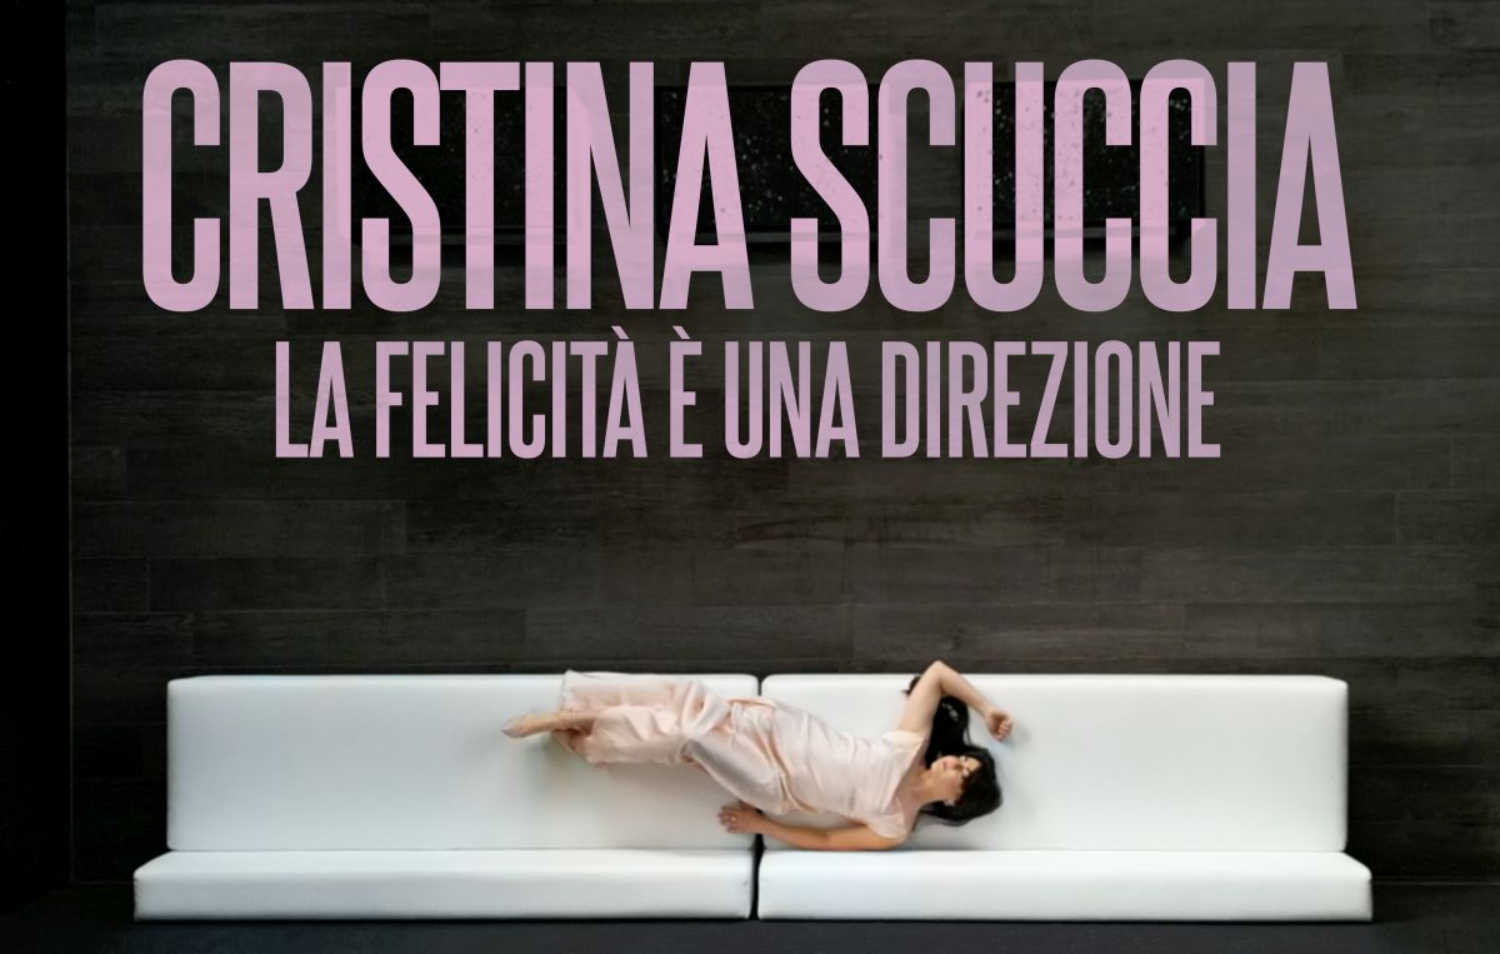 Cristina Scuccia, dal 17 marzo esce in digitale “La felicità è una direzione”